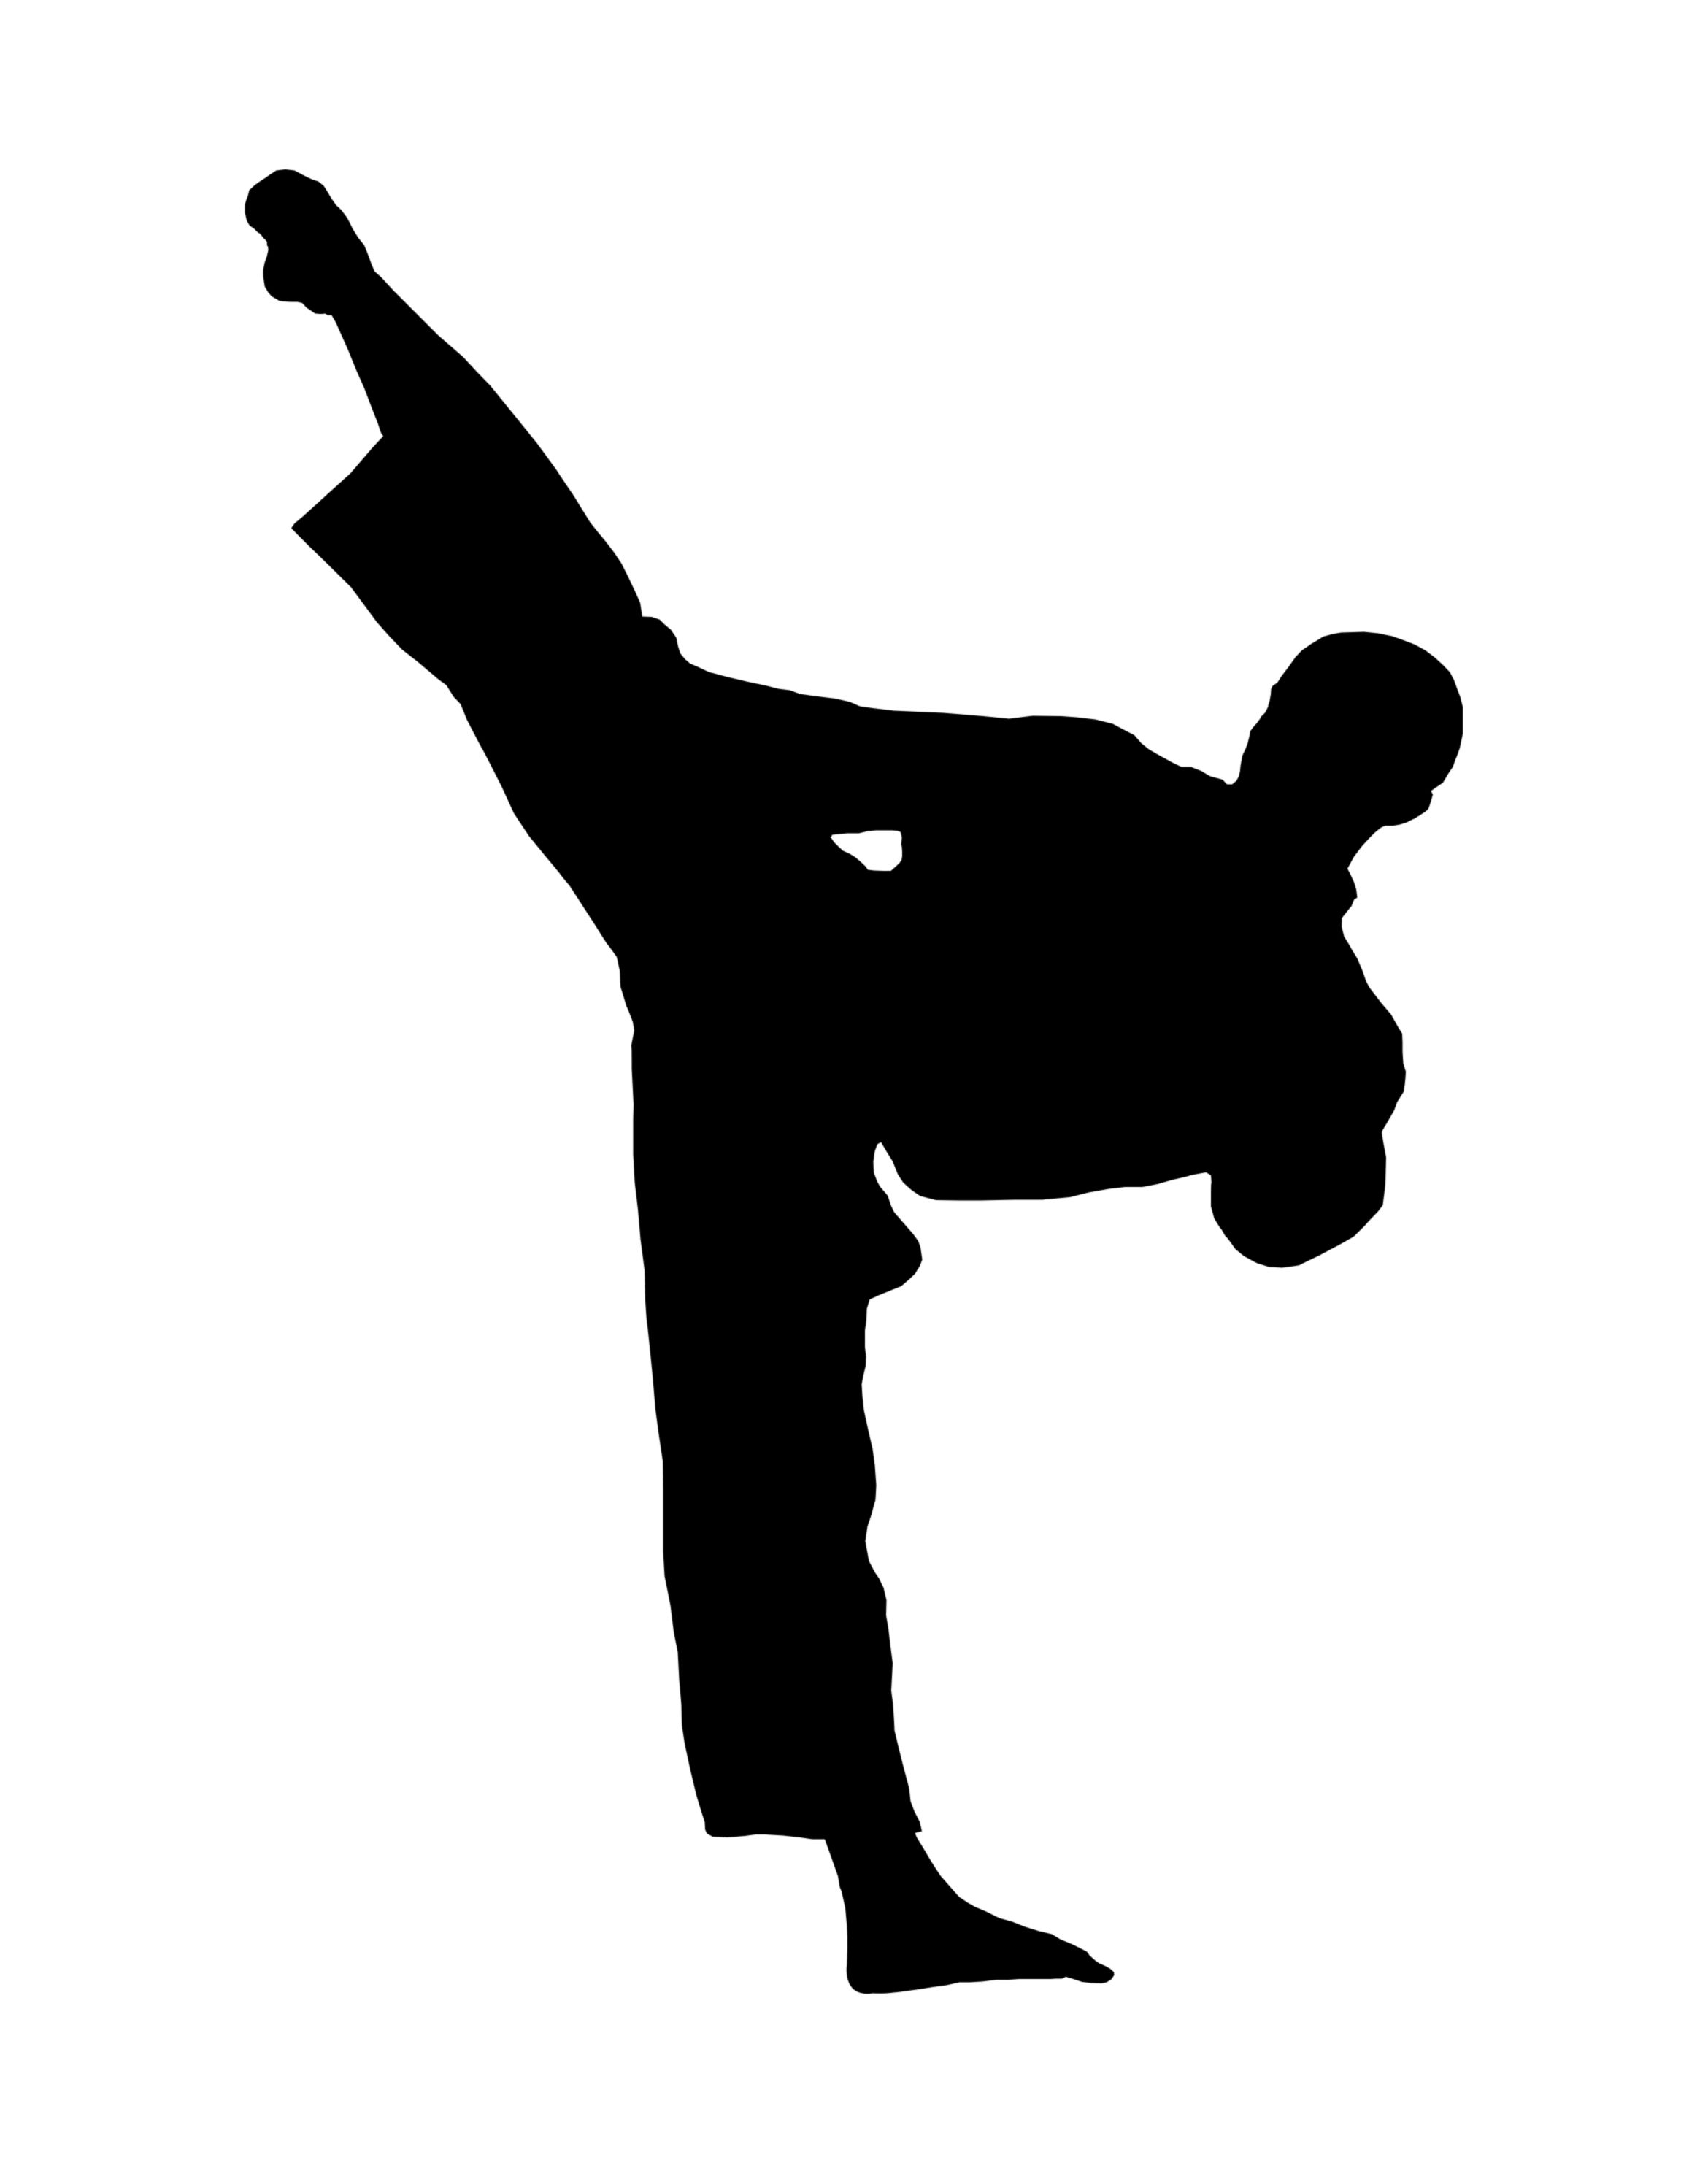 Taekwondo Silhouette Clip Art at GetDrawings | Free download